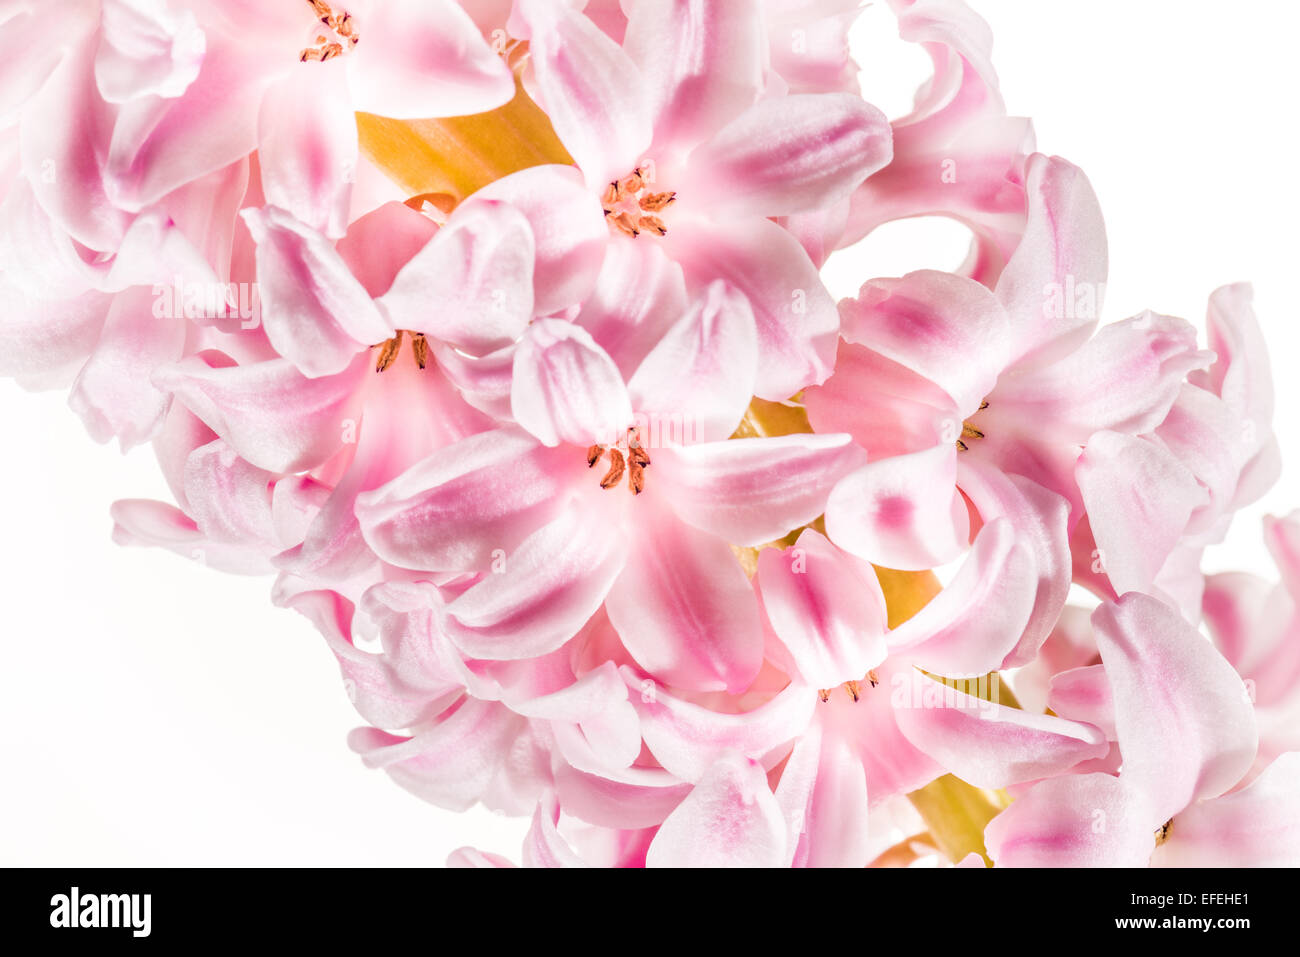 Giacinto Primavera, fragrante amore romatik offerte romantiche bella bella luce illuminata botanica primaverile fiori Foto Stock